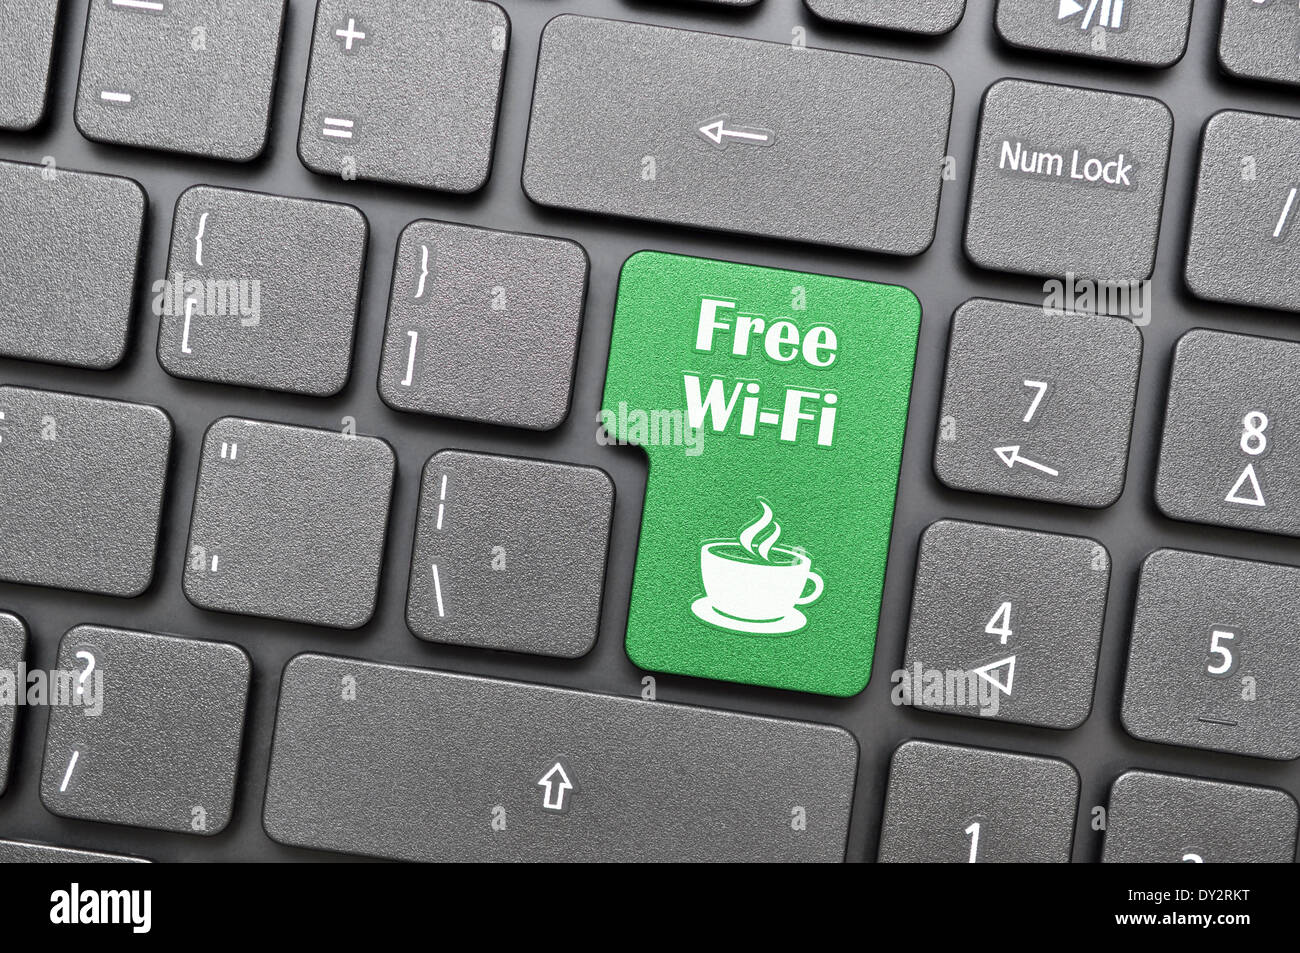 Free wifi in coffee shop on keyboard Stock Photo